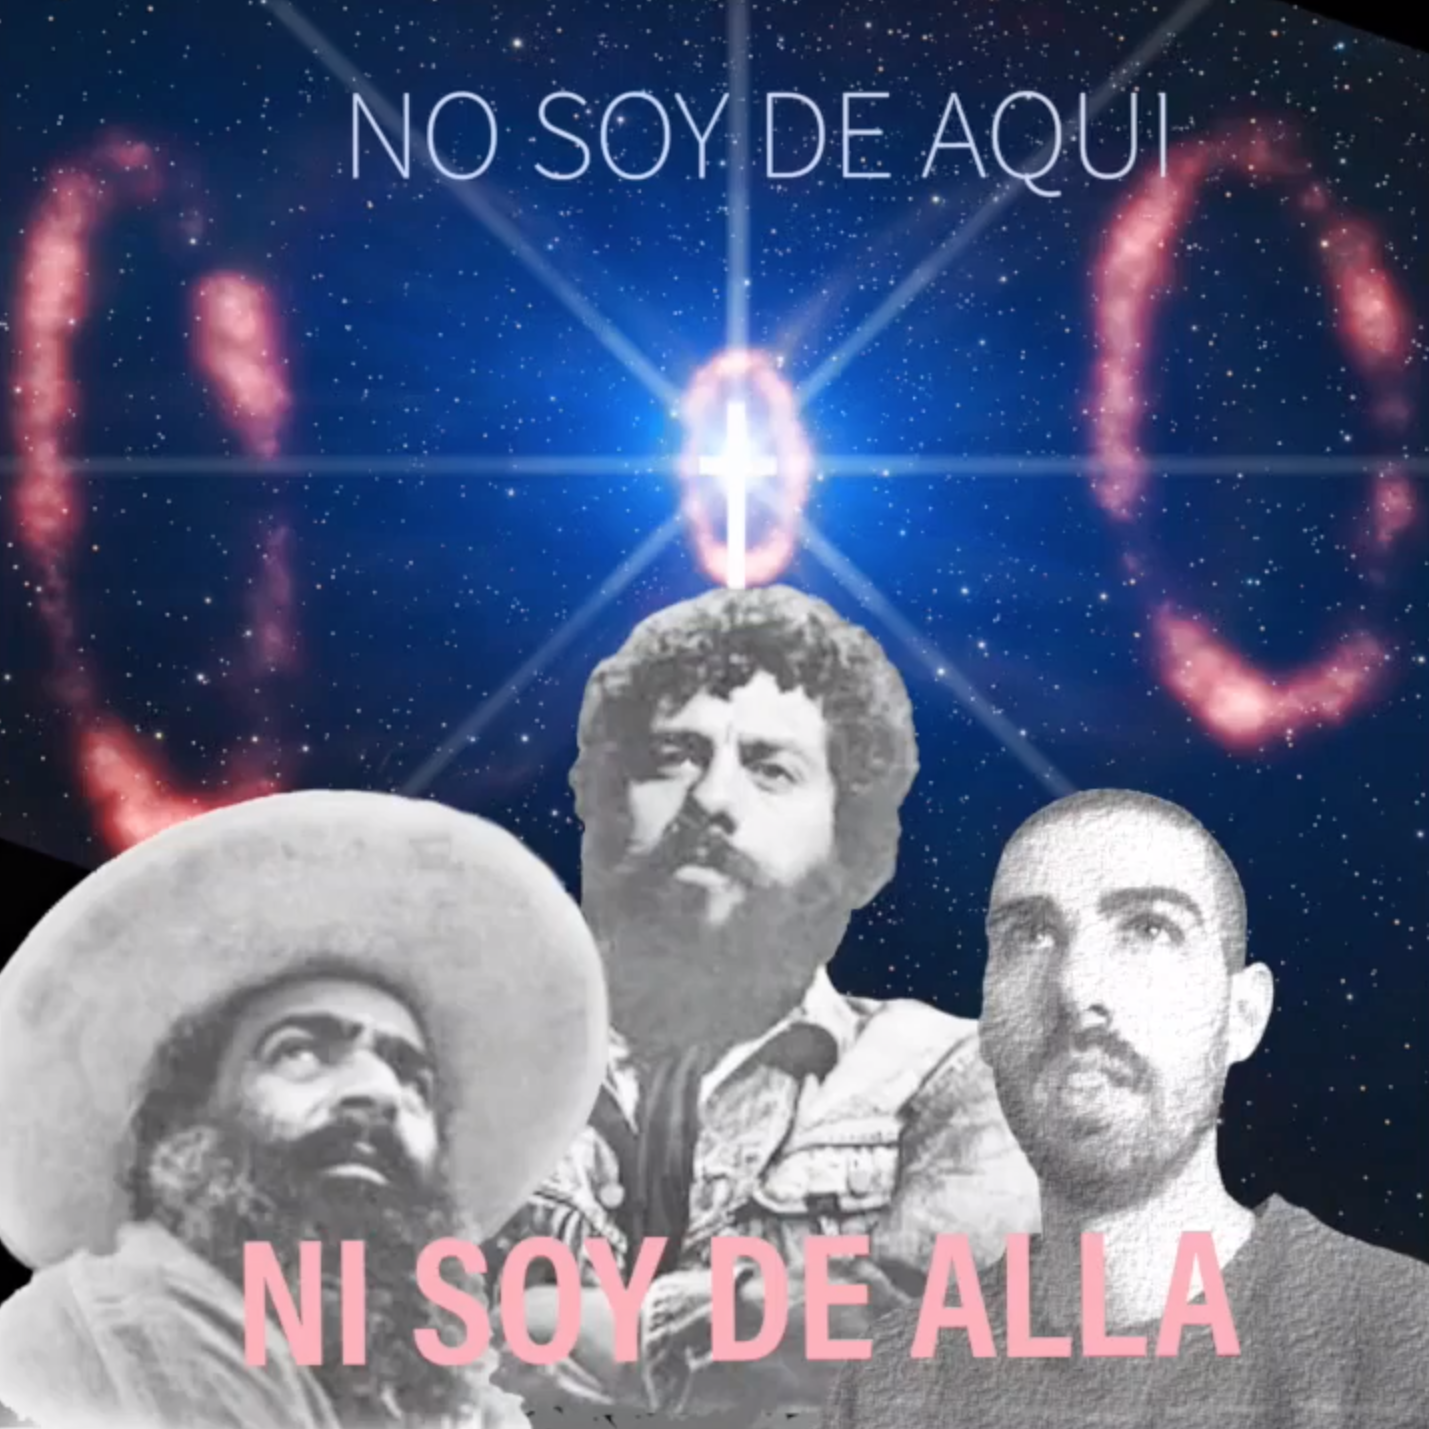 14 - Amigo Ivo - NO SOY DE AQUI NI SOY DE ALLA (Música Ayahuasca)